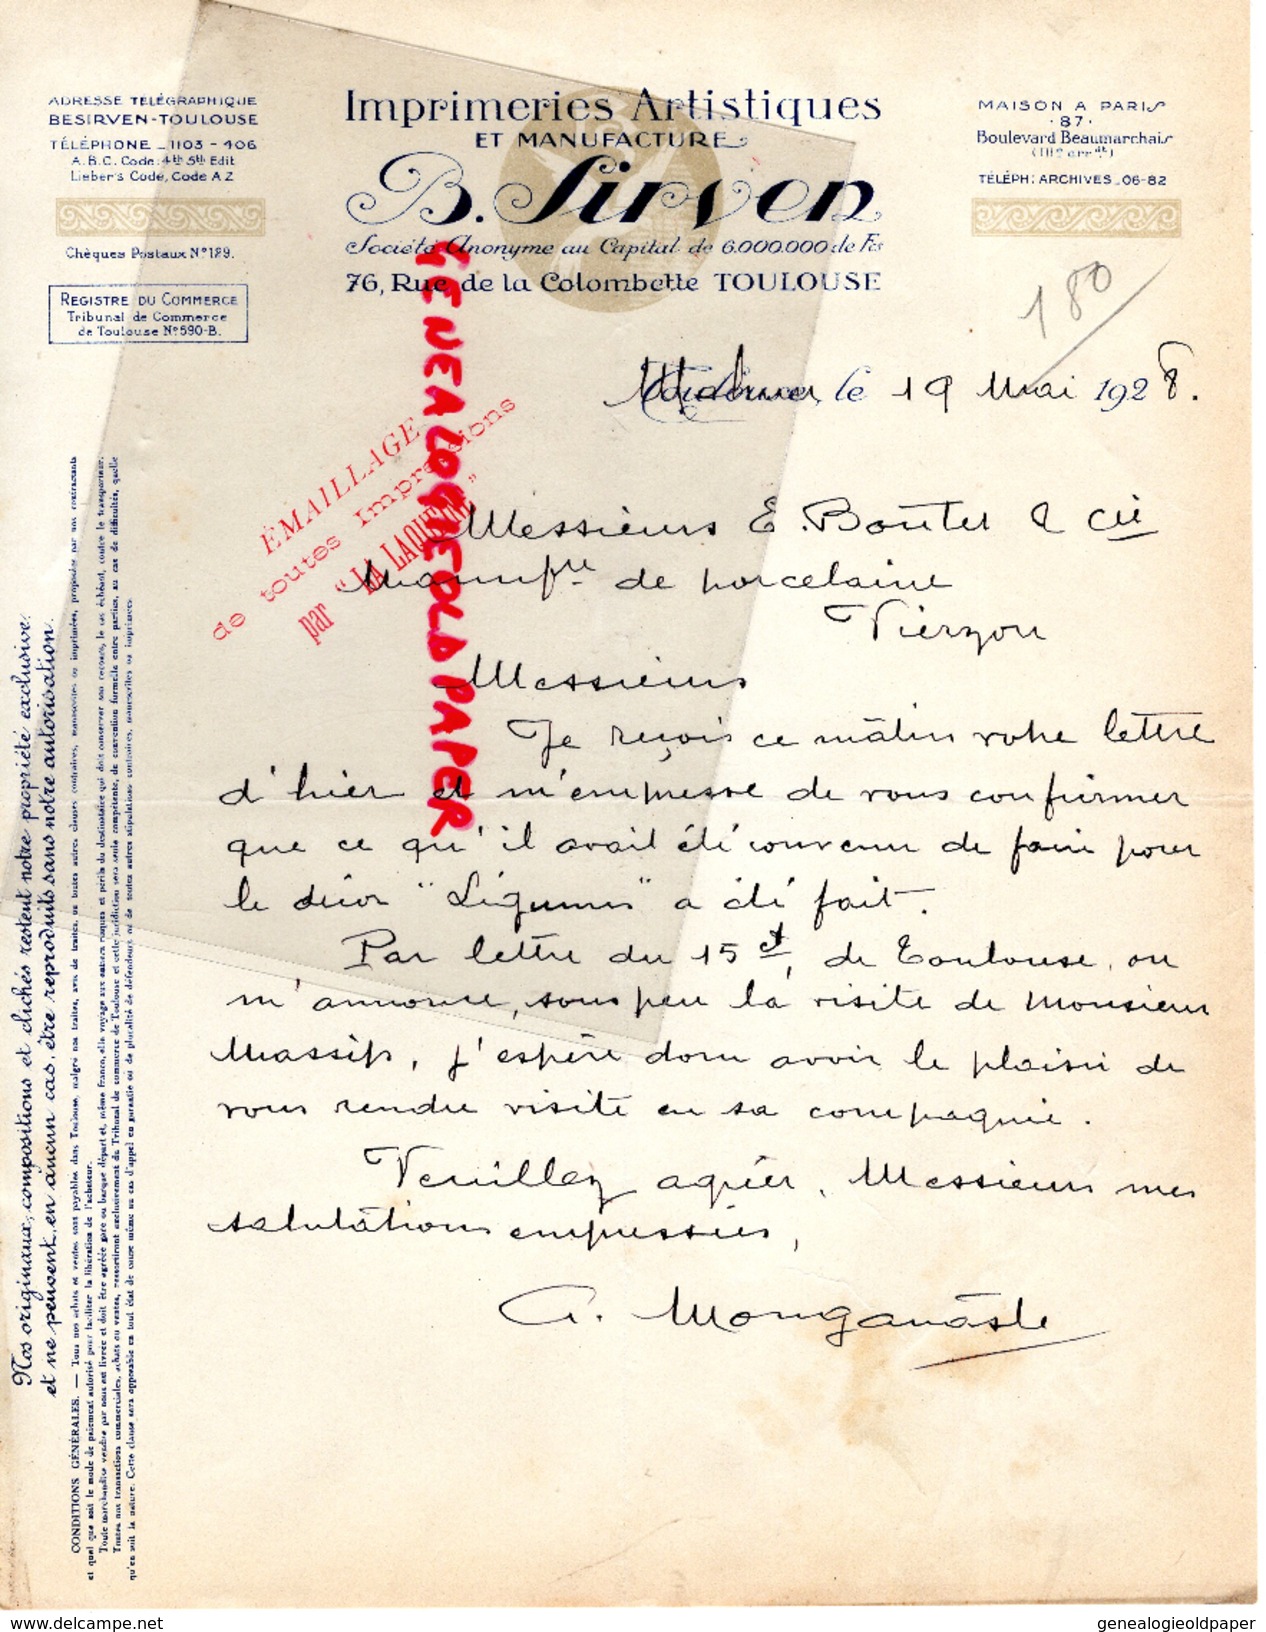 31 - TOULOUSE - B. SIRVEN- IMPRIMERIE ARTISTIQUE MANUFACTURE-76 RUE DE LA COLOMBETTE - 1928 - Druck & Papierwaren